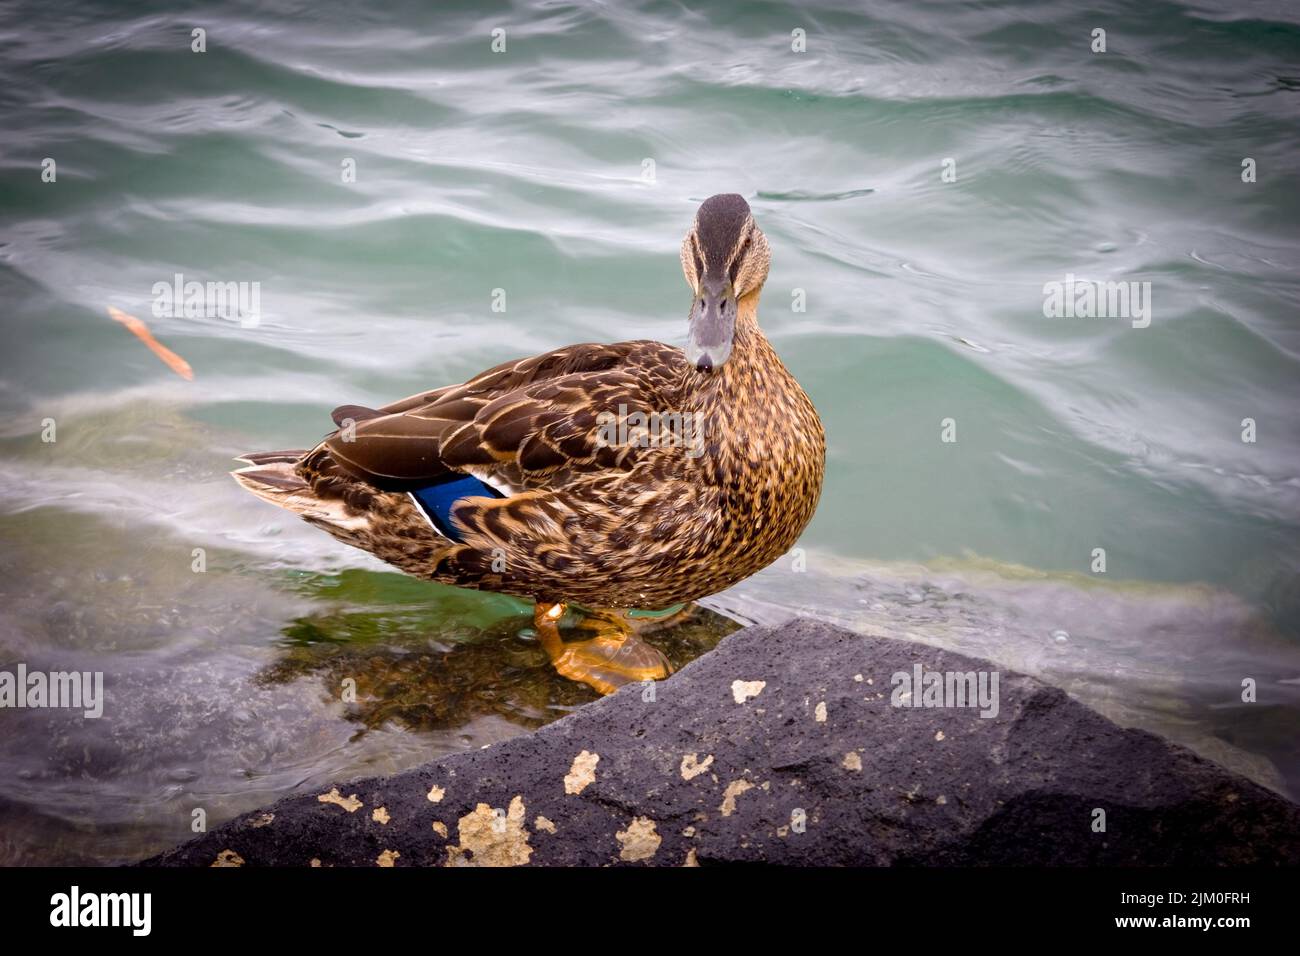 Uno sguardo alla vita in Nuova Zelanda: Mallard Drake sulla riva del fiume. Foto Stock